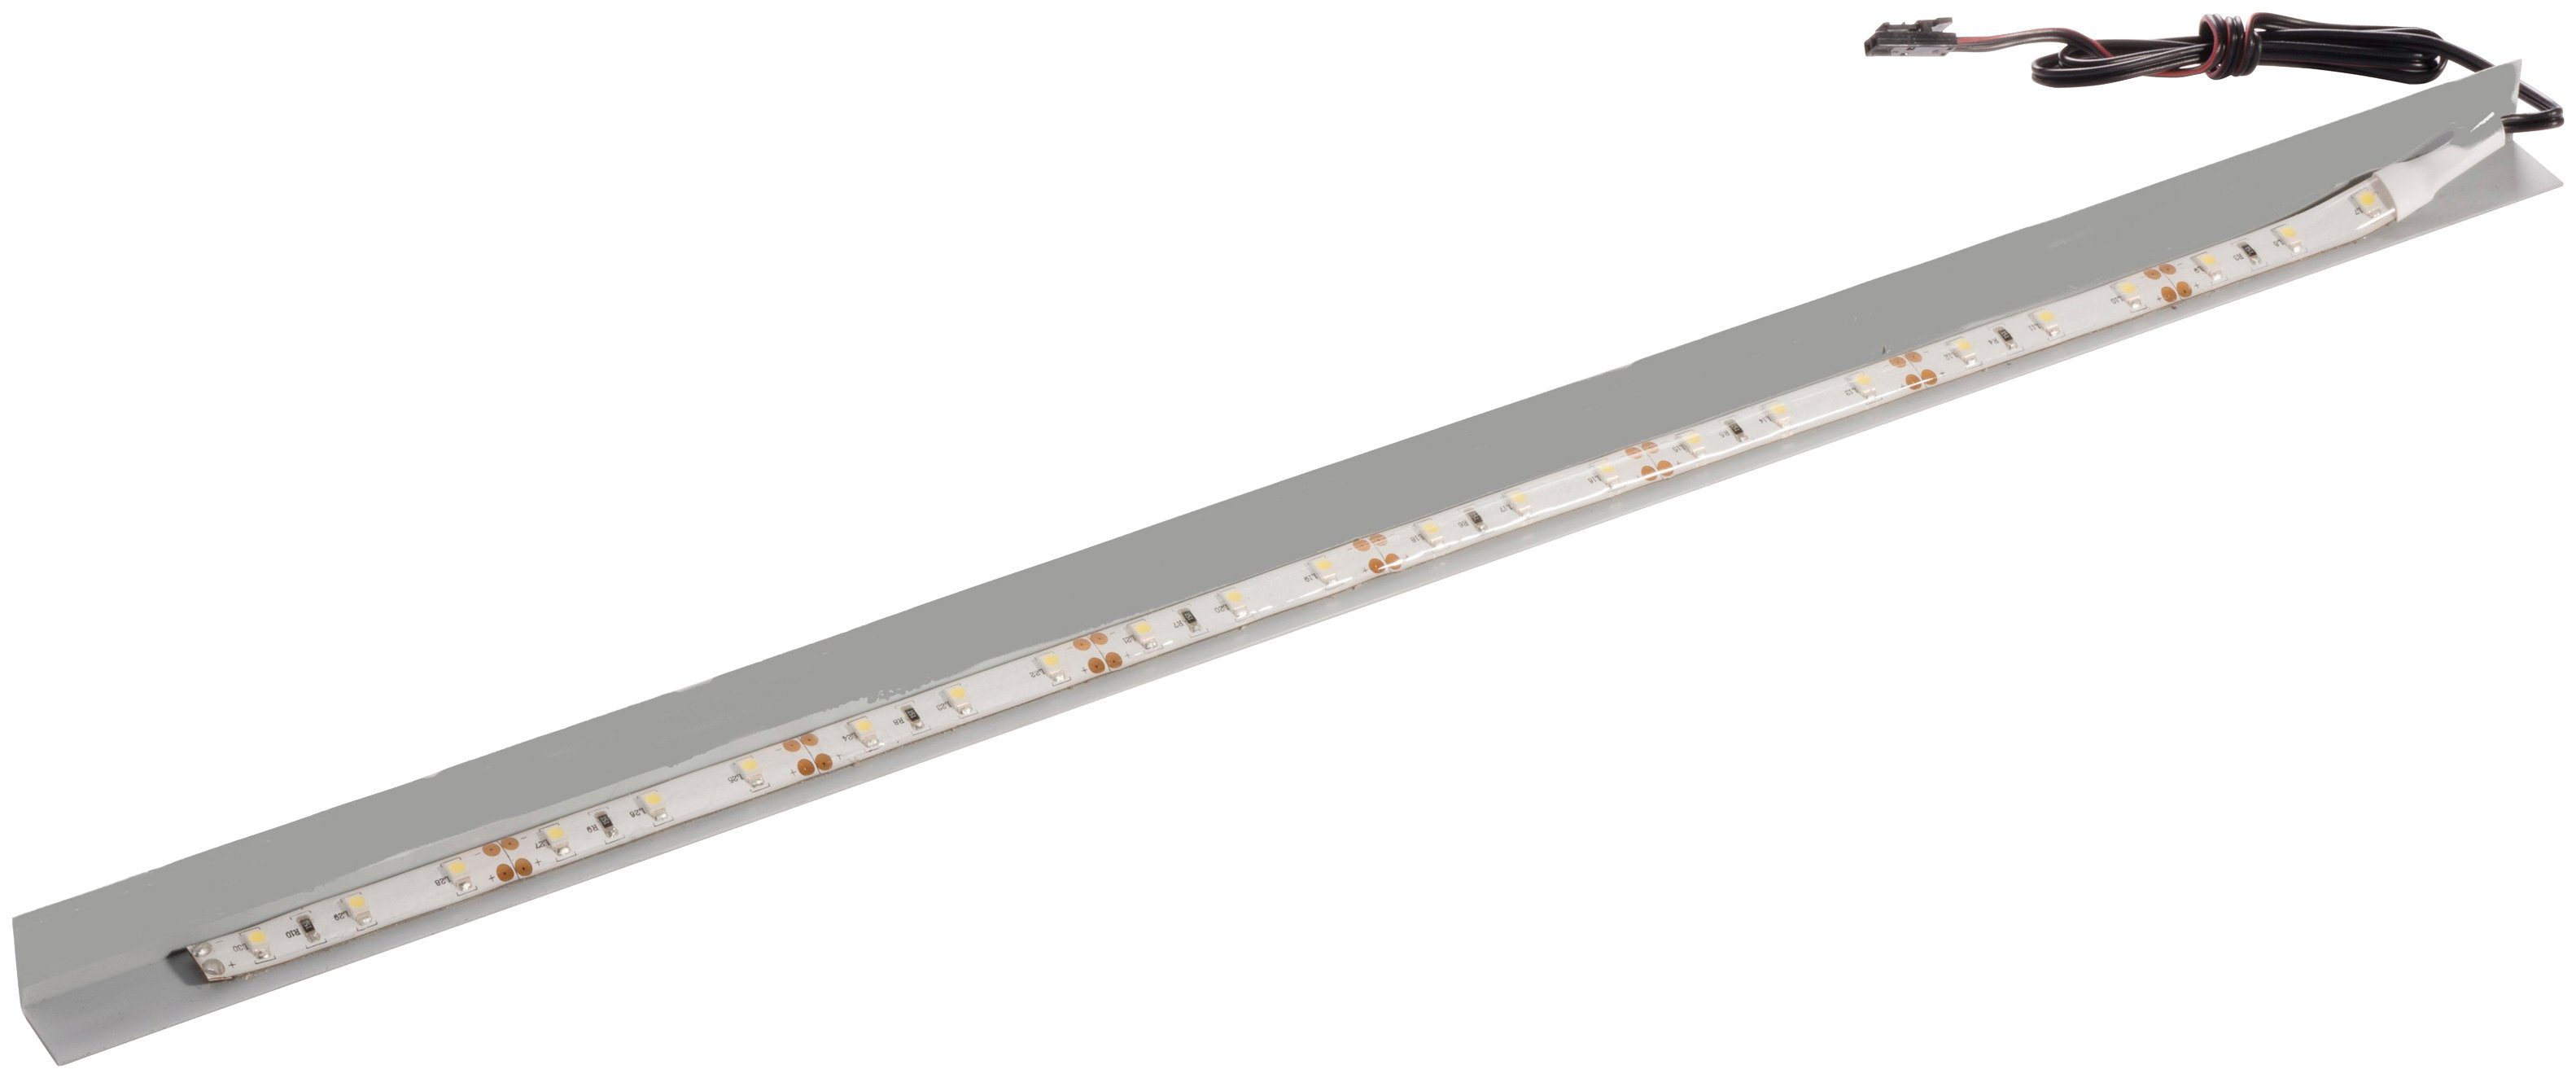 FACKELMANN LED Unterbauleuchte Oxford, Spiegelschrank passend LED für Neutralweiß, wechselbar, breit 60cm